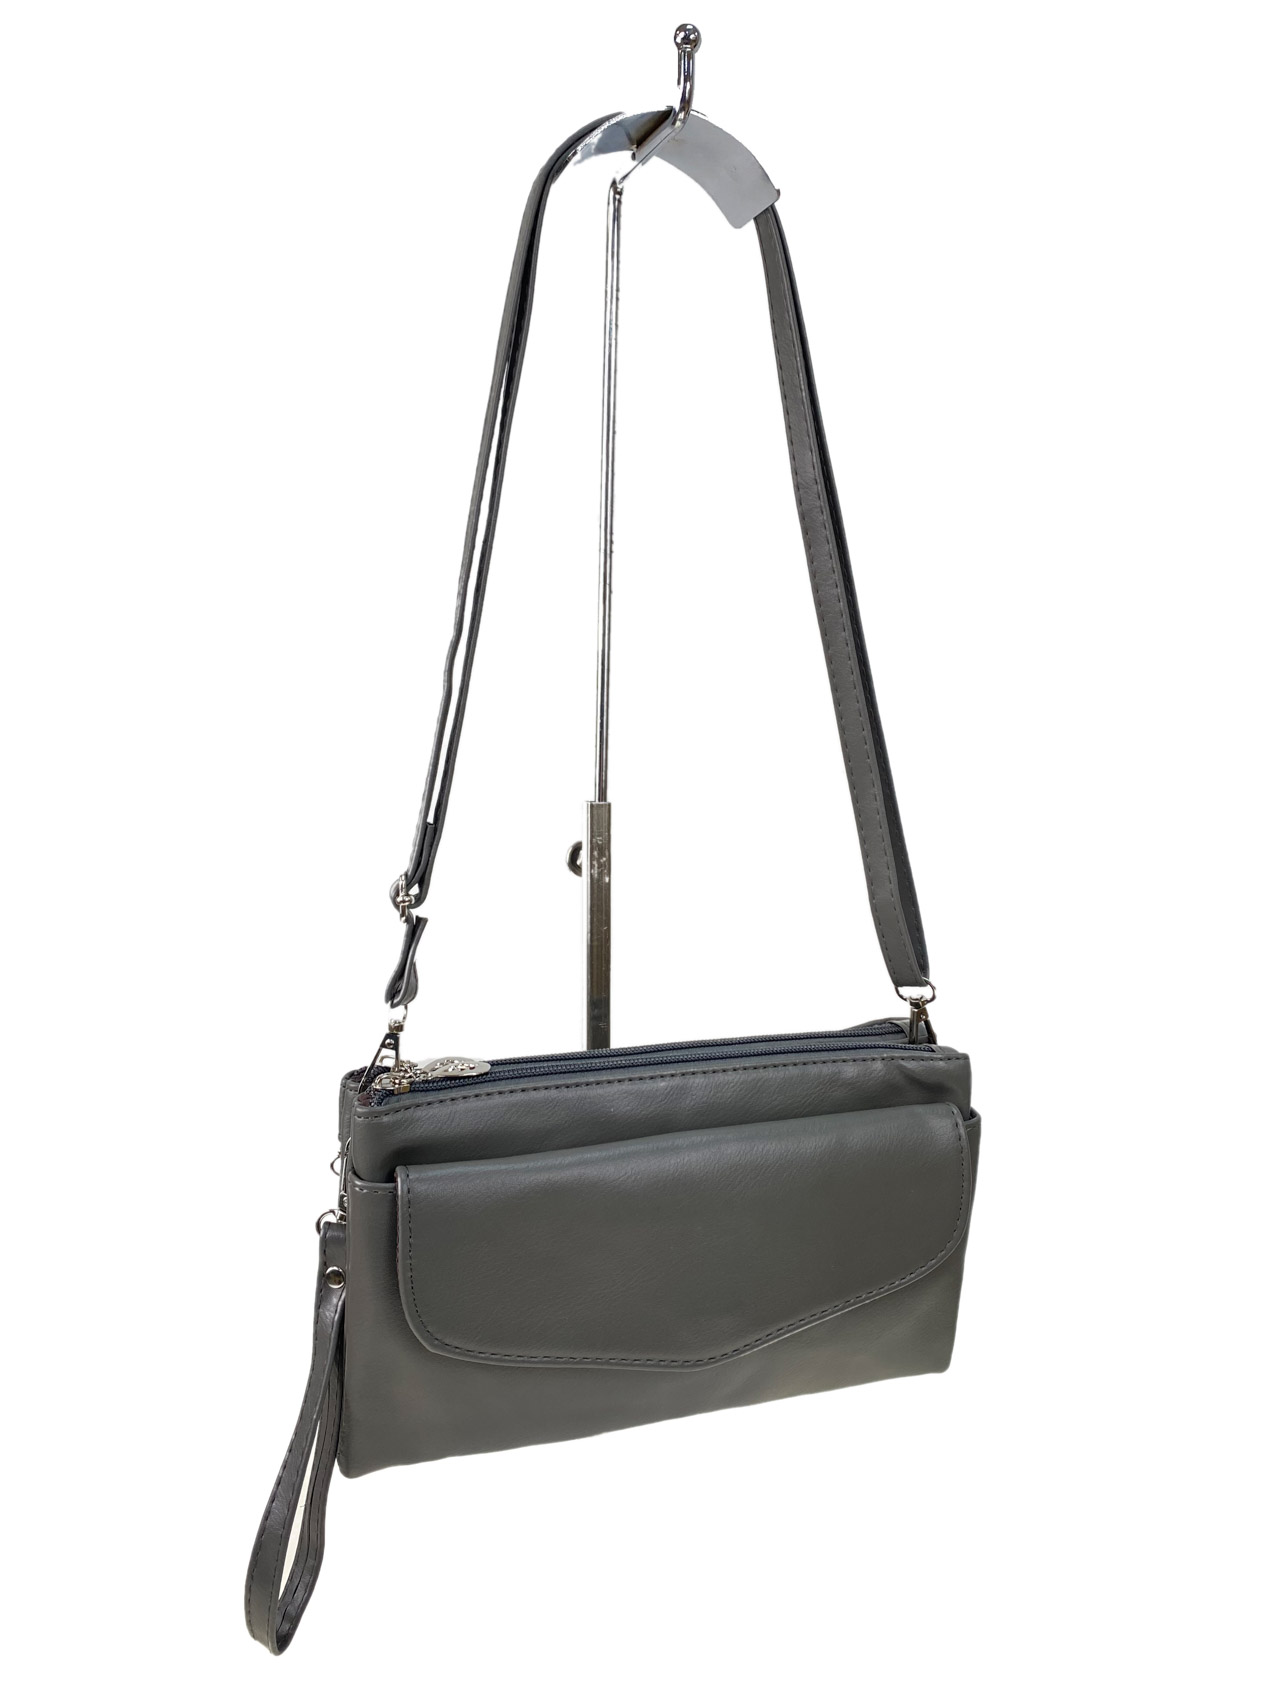 Женская сумка клатч из искусственной кожи, цвет серый